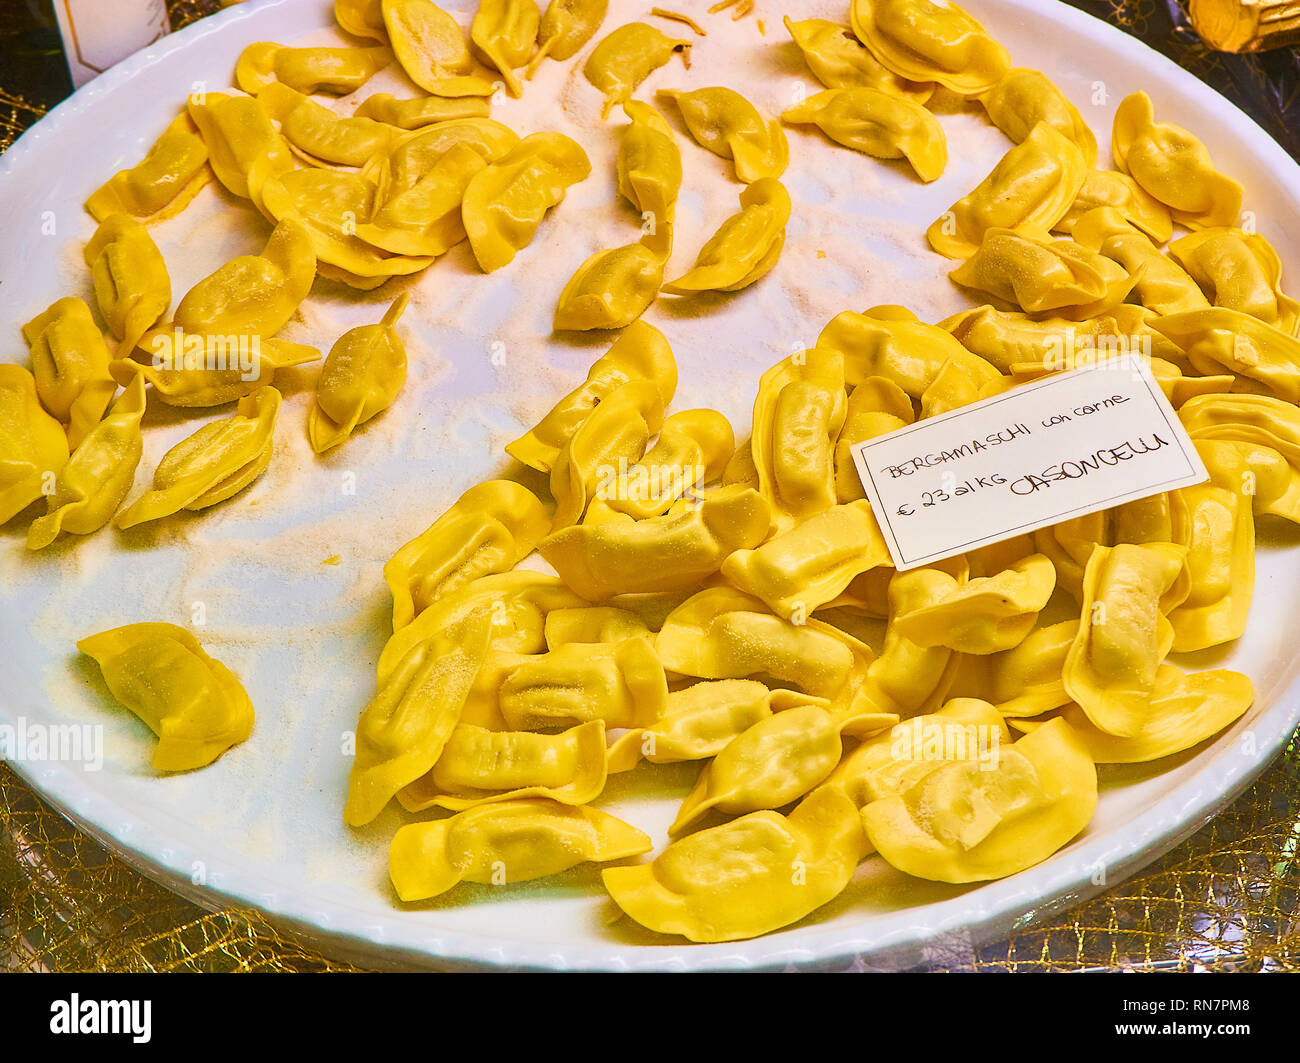 Hausgemachten Casoncelli Fleisch Füllungen für Verkauf in einem Shop. Frisch gefüllte Teigwaren, die typisch für die kulinarische Tradition der Lombardei. Italien. Stockfoto